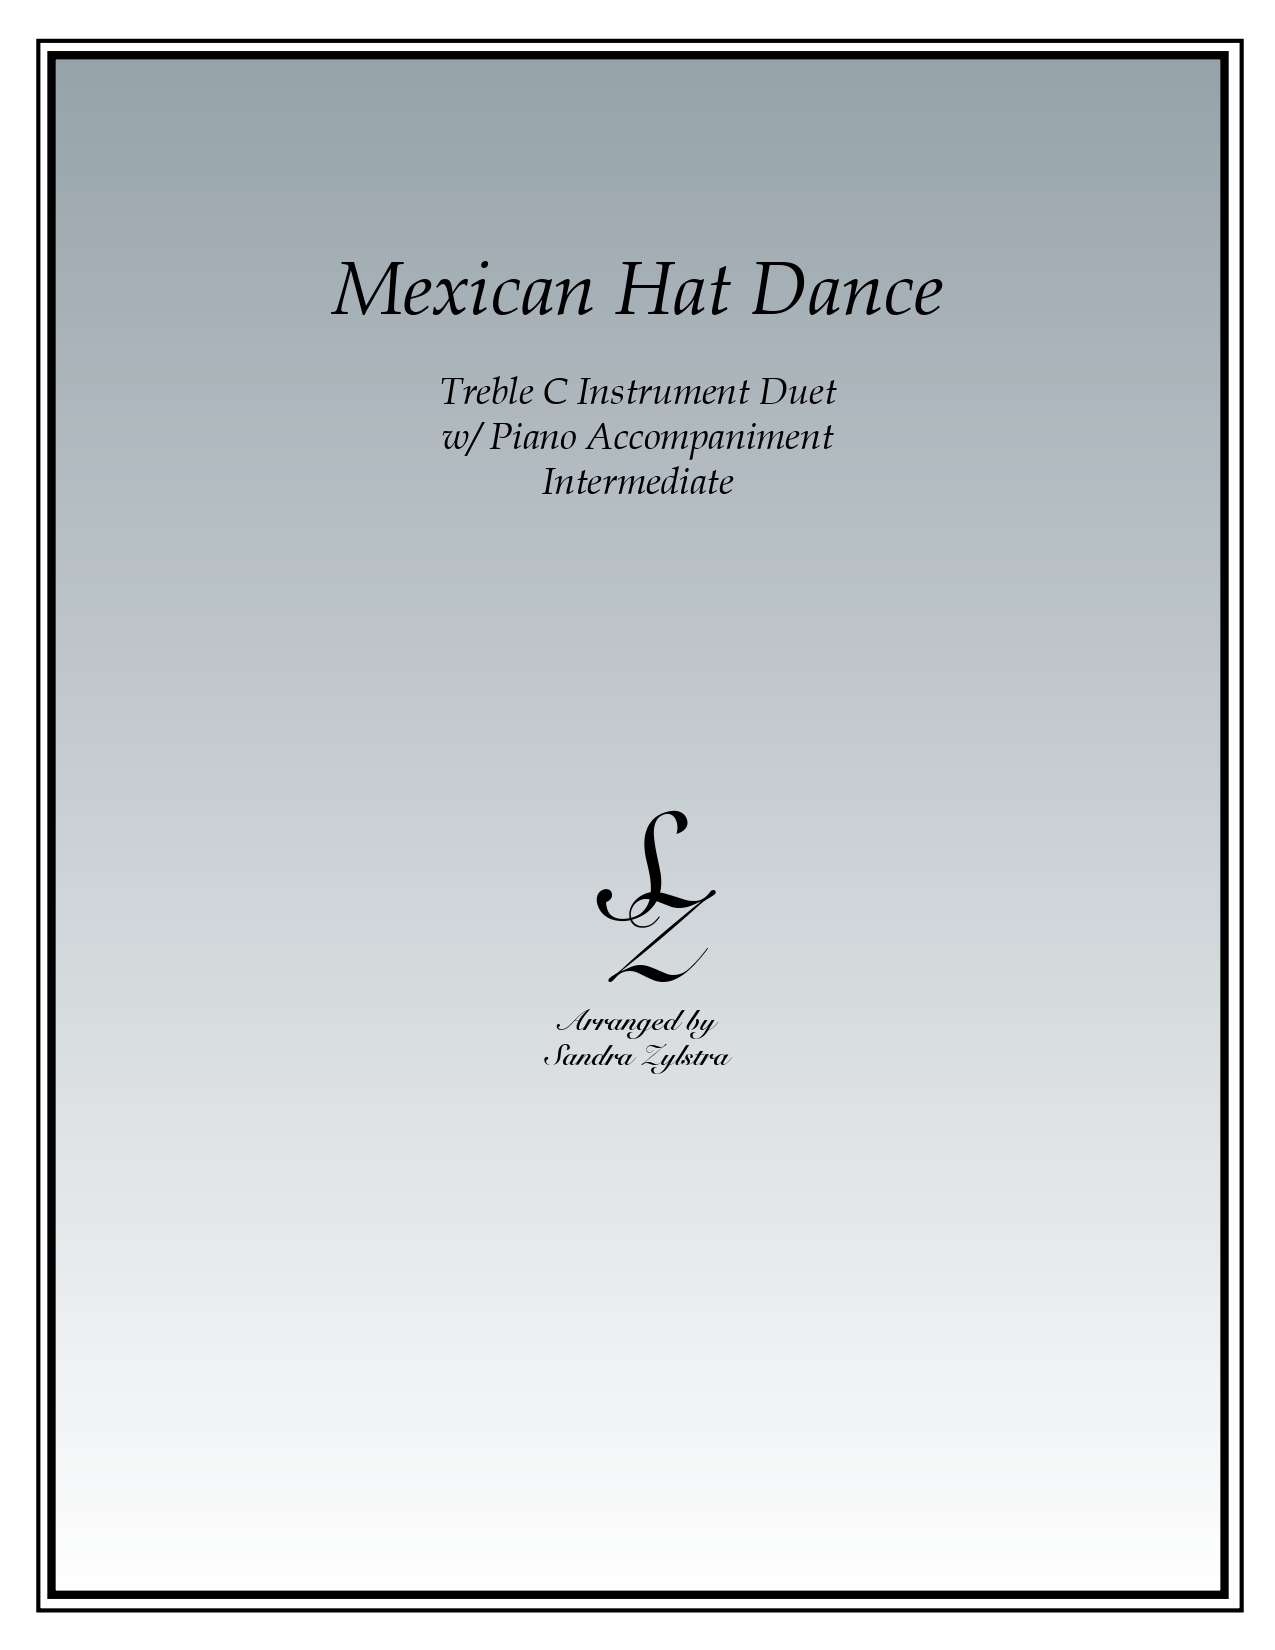 Mexican Hat Dance treble C instrument duet parts cover page 00011